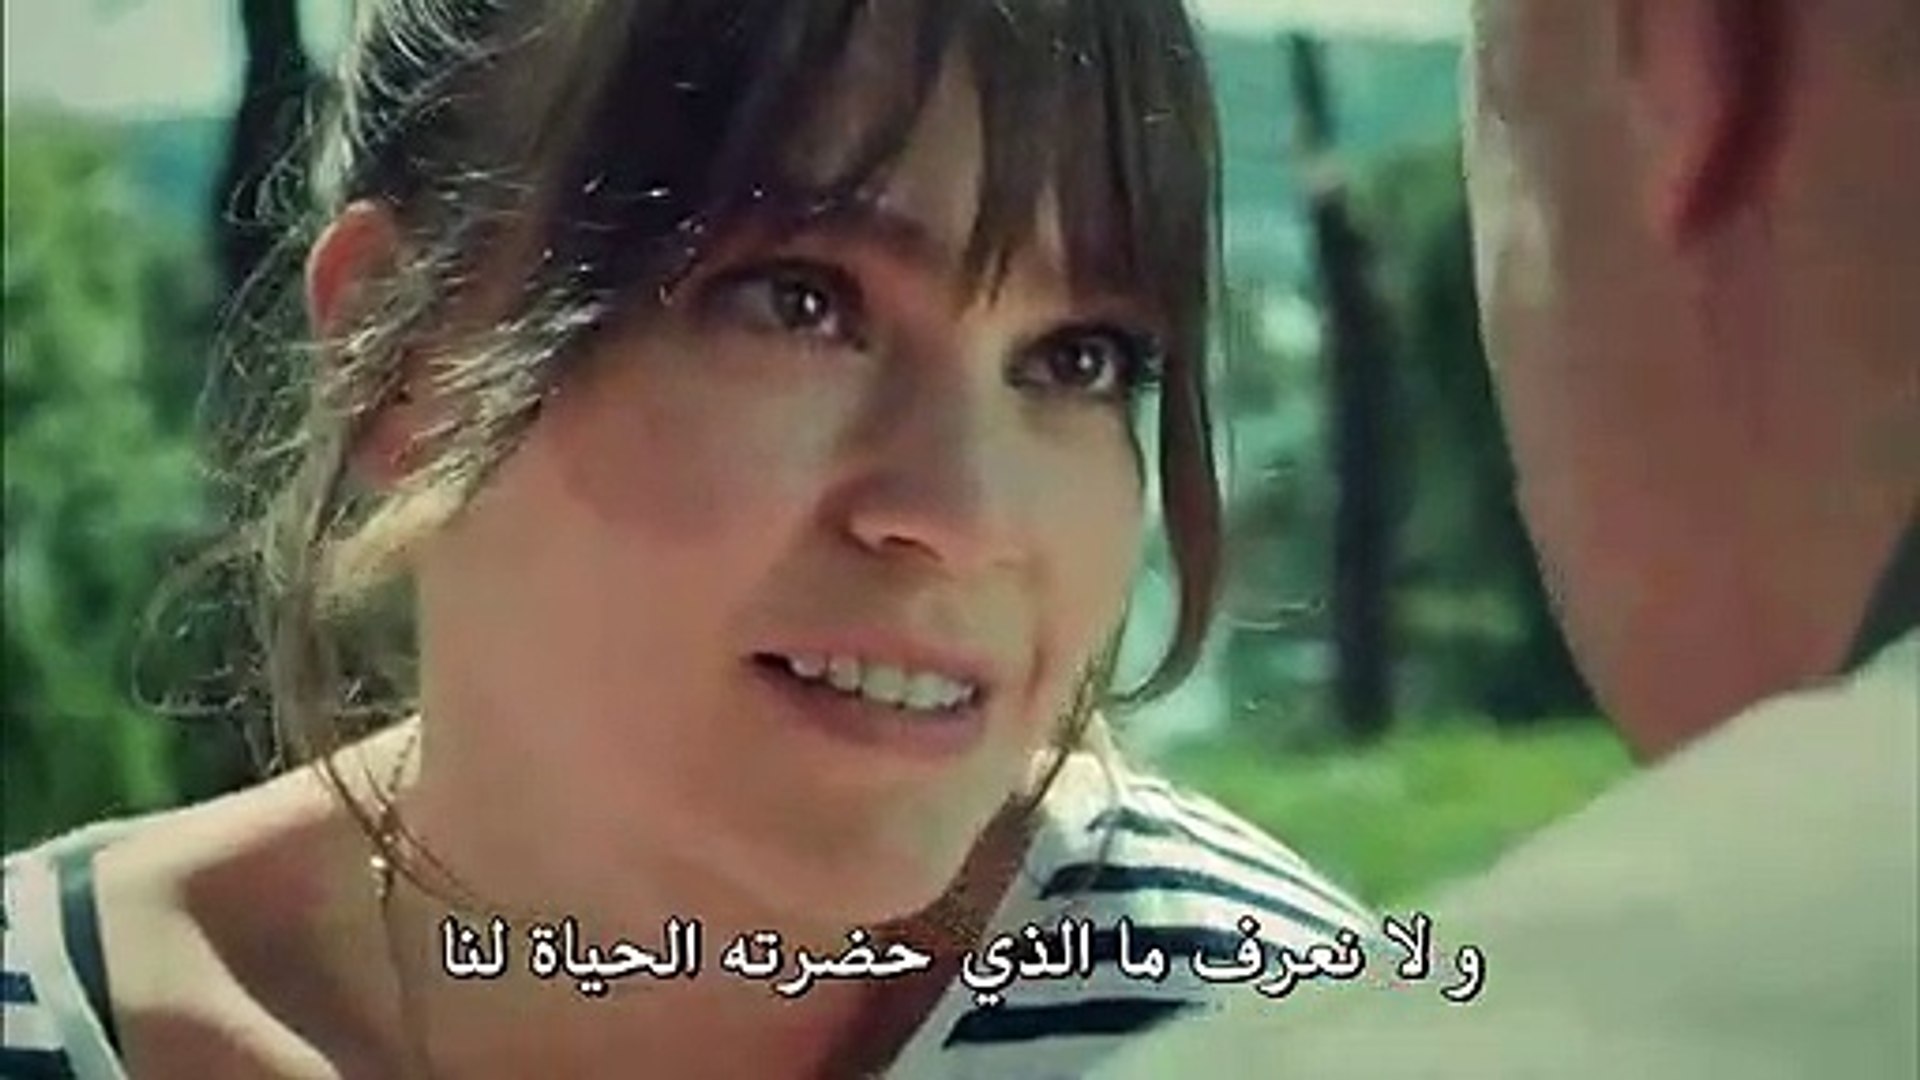 مسلسل عروس إسطنبول الموسم الثاني الحلقة 37 الأخيرة مترجمة للعربية القسم 3 -  video Dailymotion